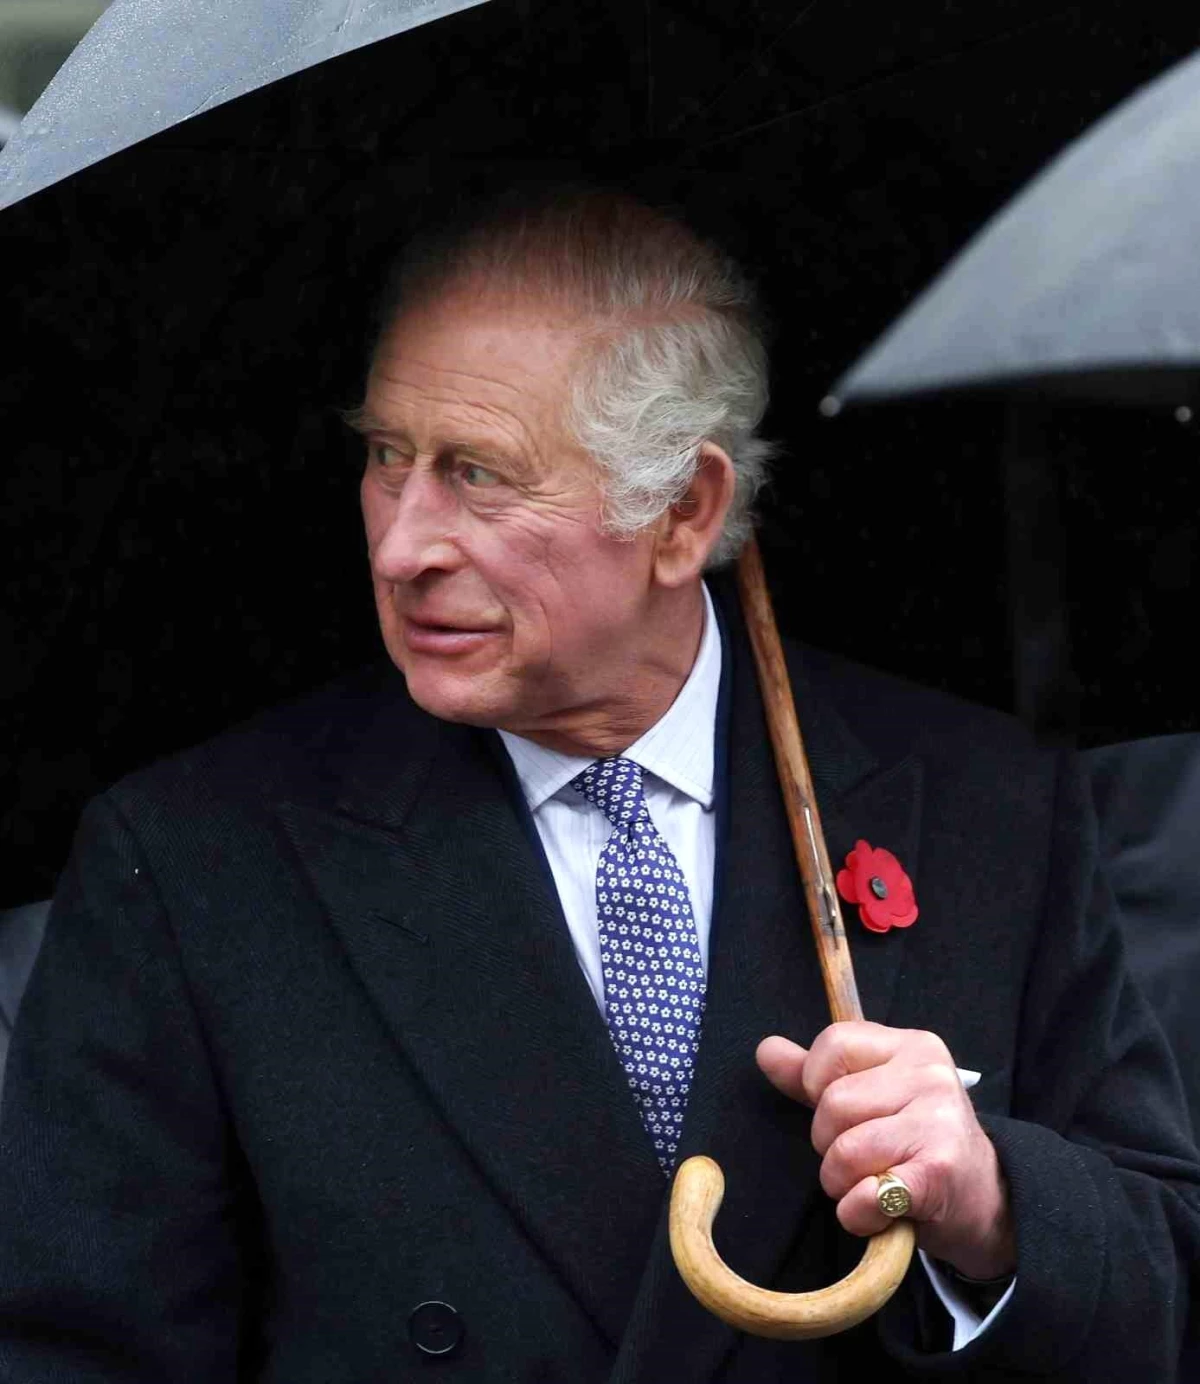 İngiltere Kralı III. Charles, prostat büyümesi nedeniyle hastaneye gitti